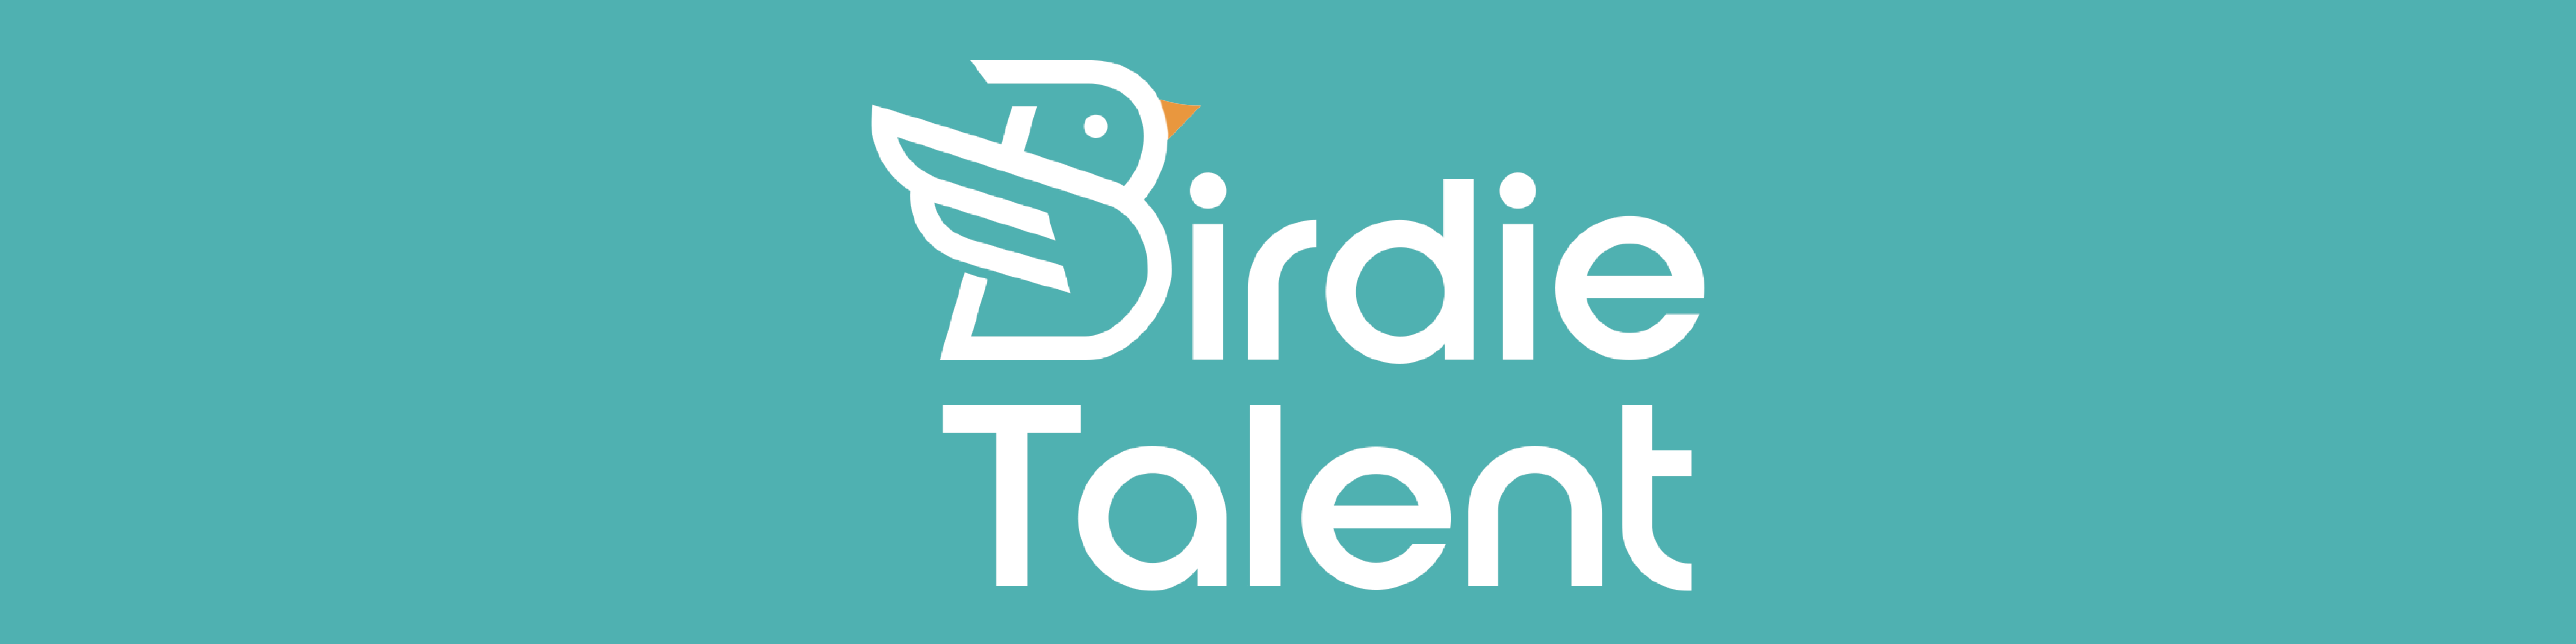 Birdie Talent